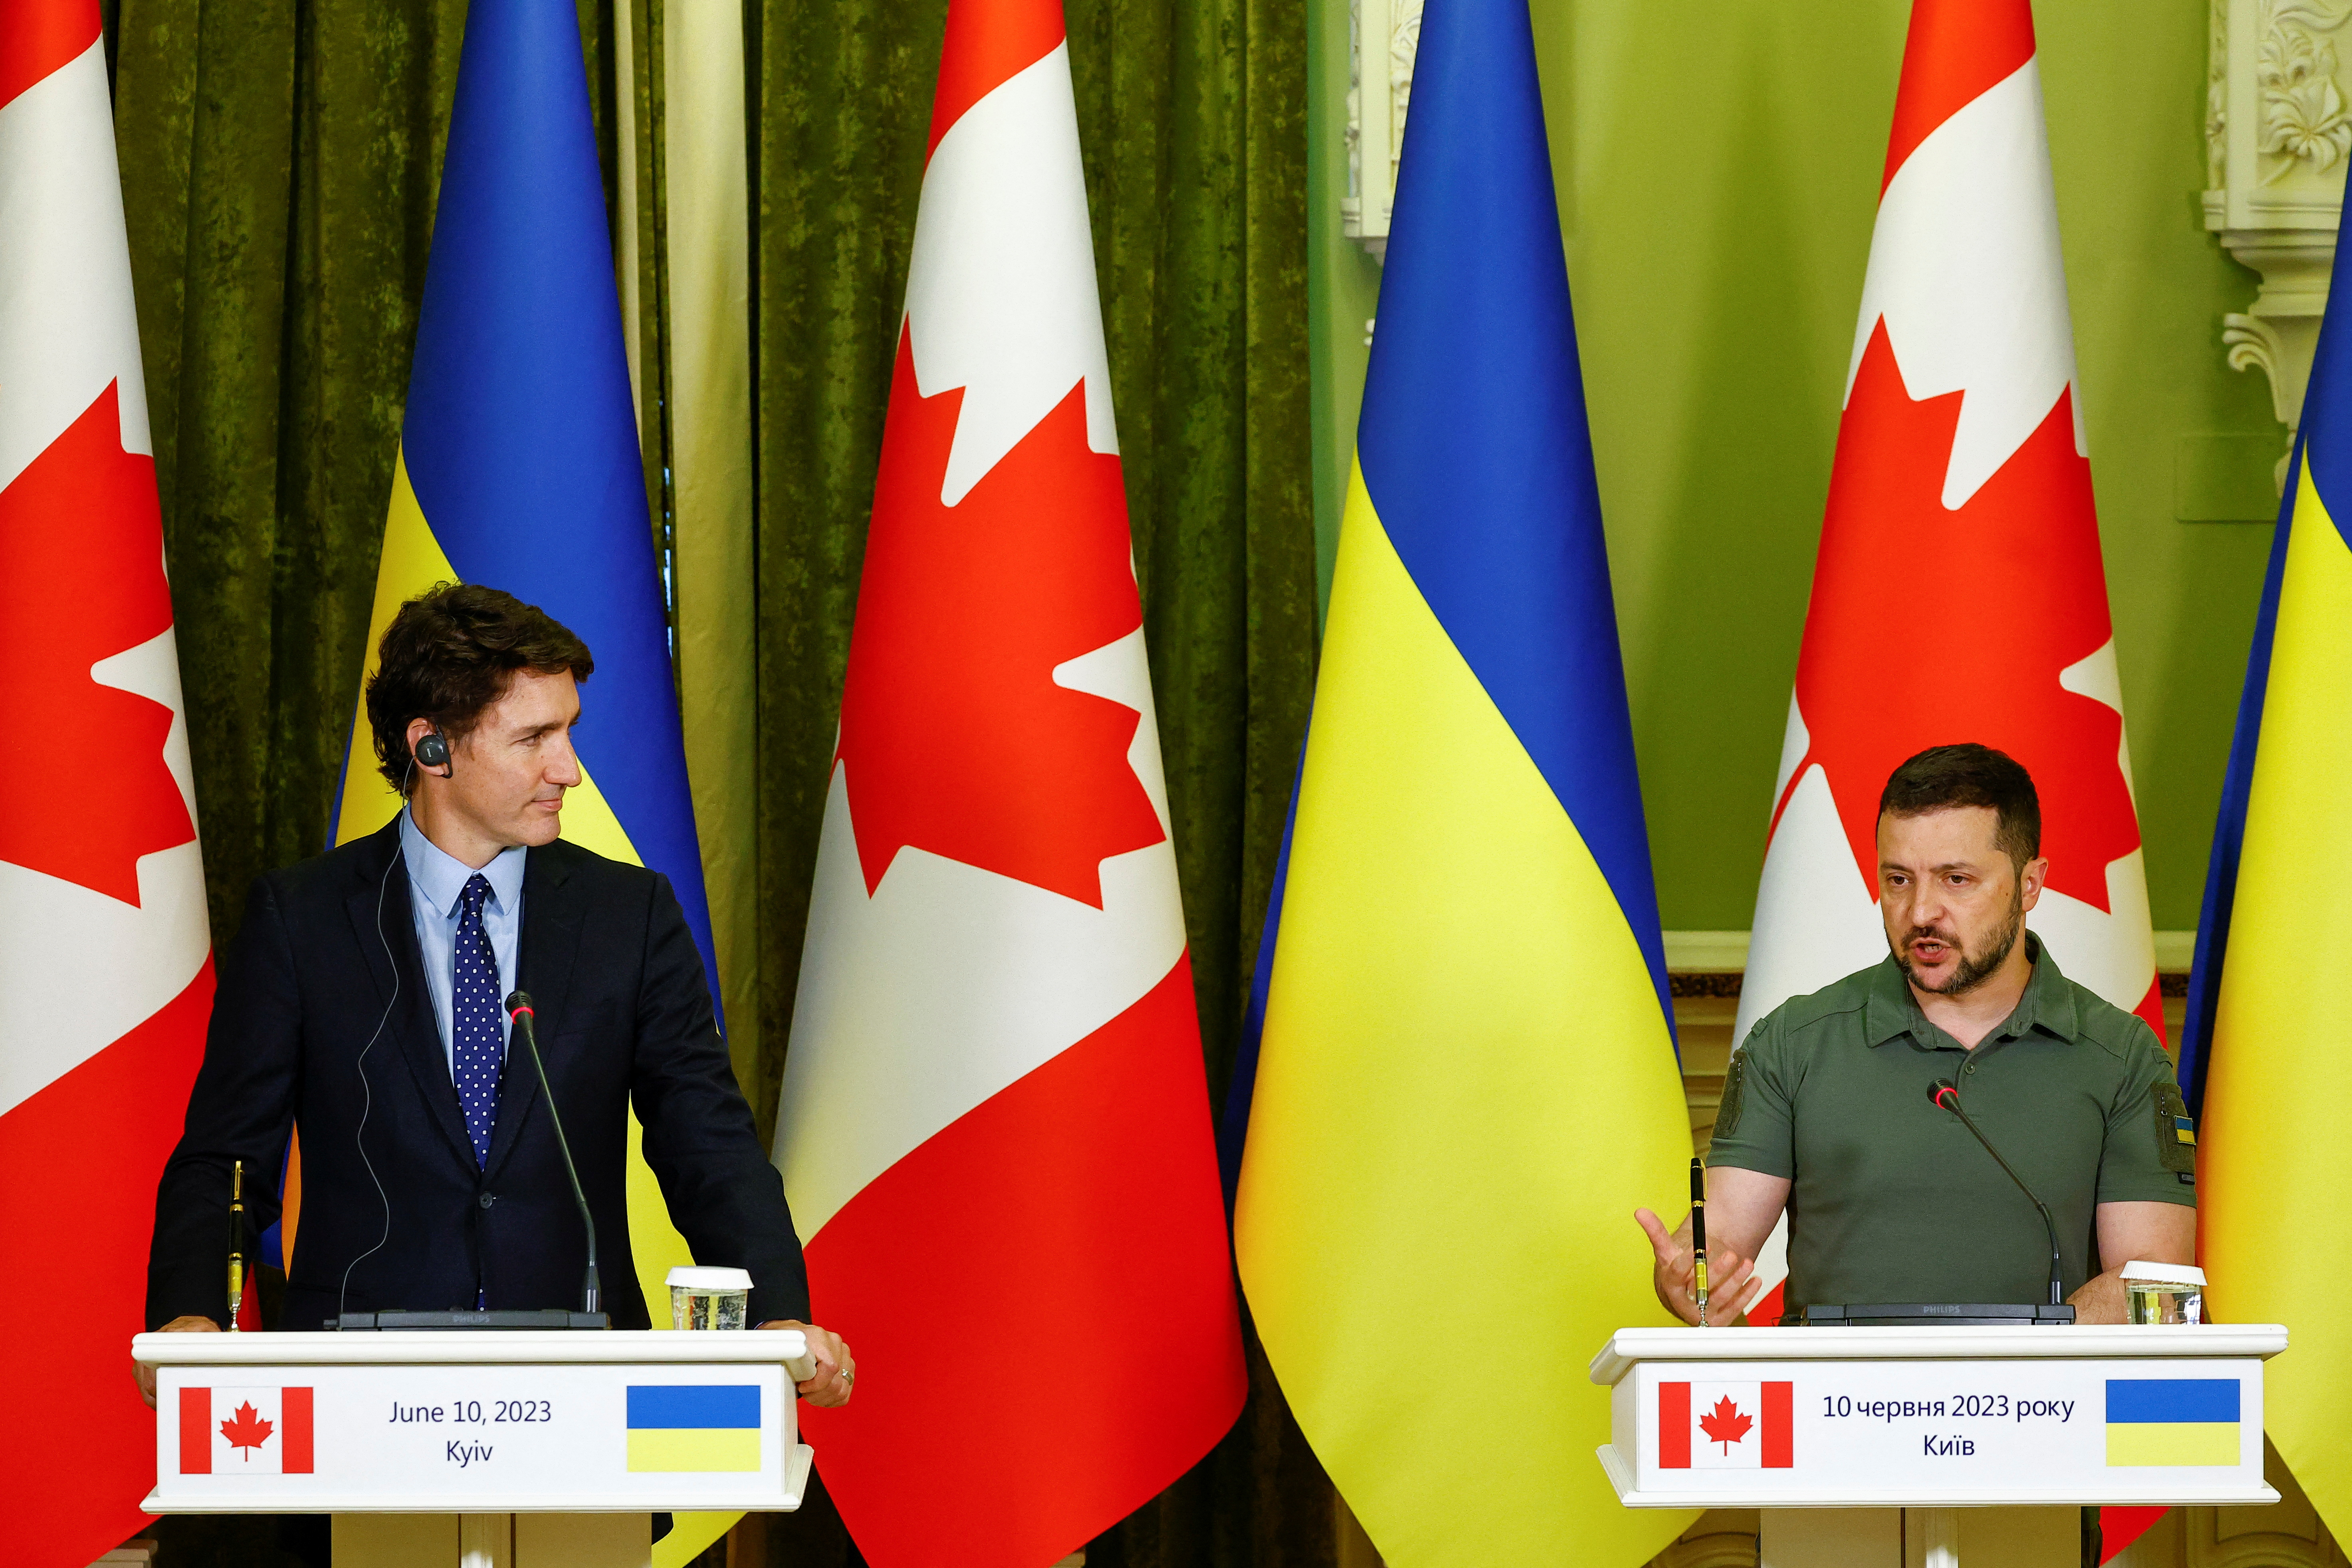 El primer ministro canadiense, Justin Trudeau, y el presidente de Ucrania, Volodymyr Zelenskiy, asisten a una conferencia de prensa conjunta, en medio del ataque de Rusia a Ucrania, en Kiev, Ucrania, el 10 de junio de 2023. REUTERS/Valentyn Ogirenko